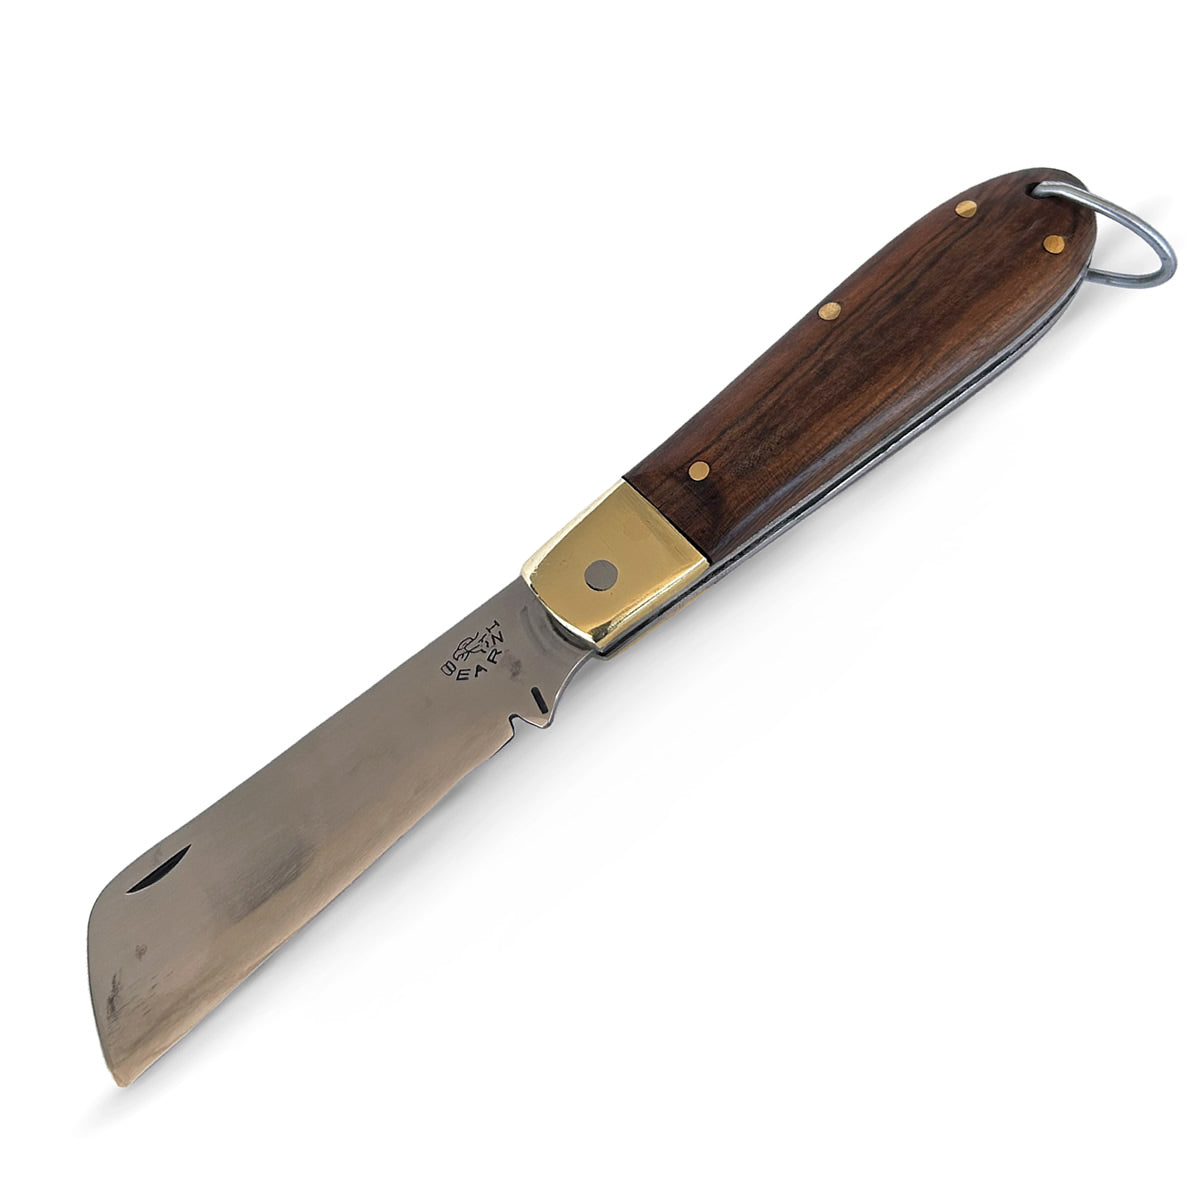 Canivete clássico artesanal modelo Flow cabo em madeira e lâmina em aço inox. 